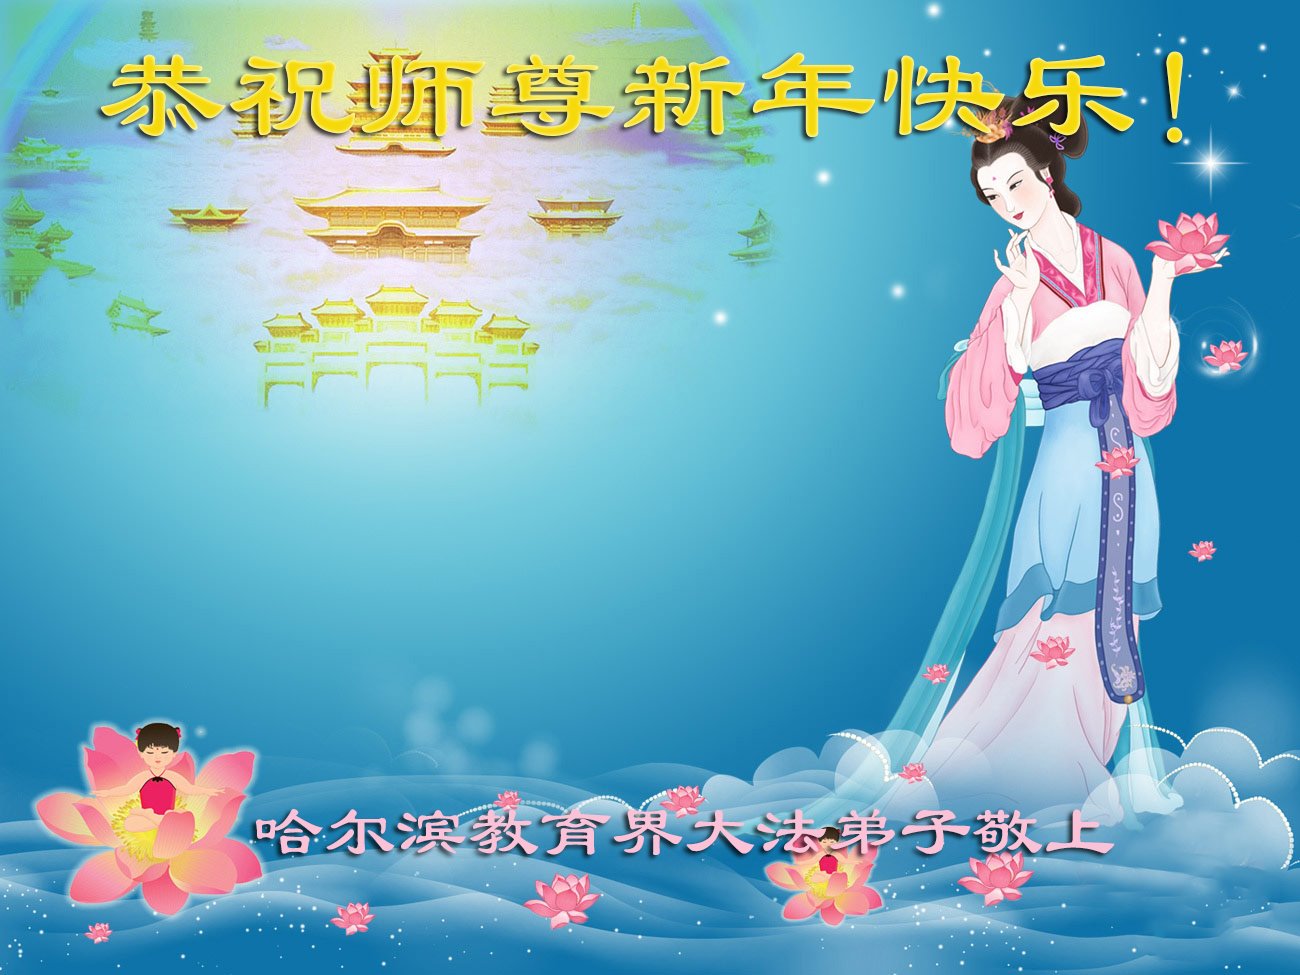 Image for article Les pratiquants de Falun Dafa travaillant dans le système éducatif chinois souhaitent à Maître Li Hongzhi un bon Nouvel An chinois ! (13 vœux)